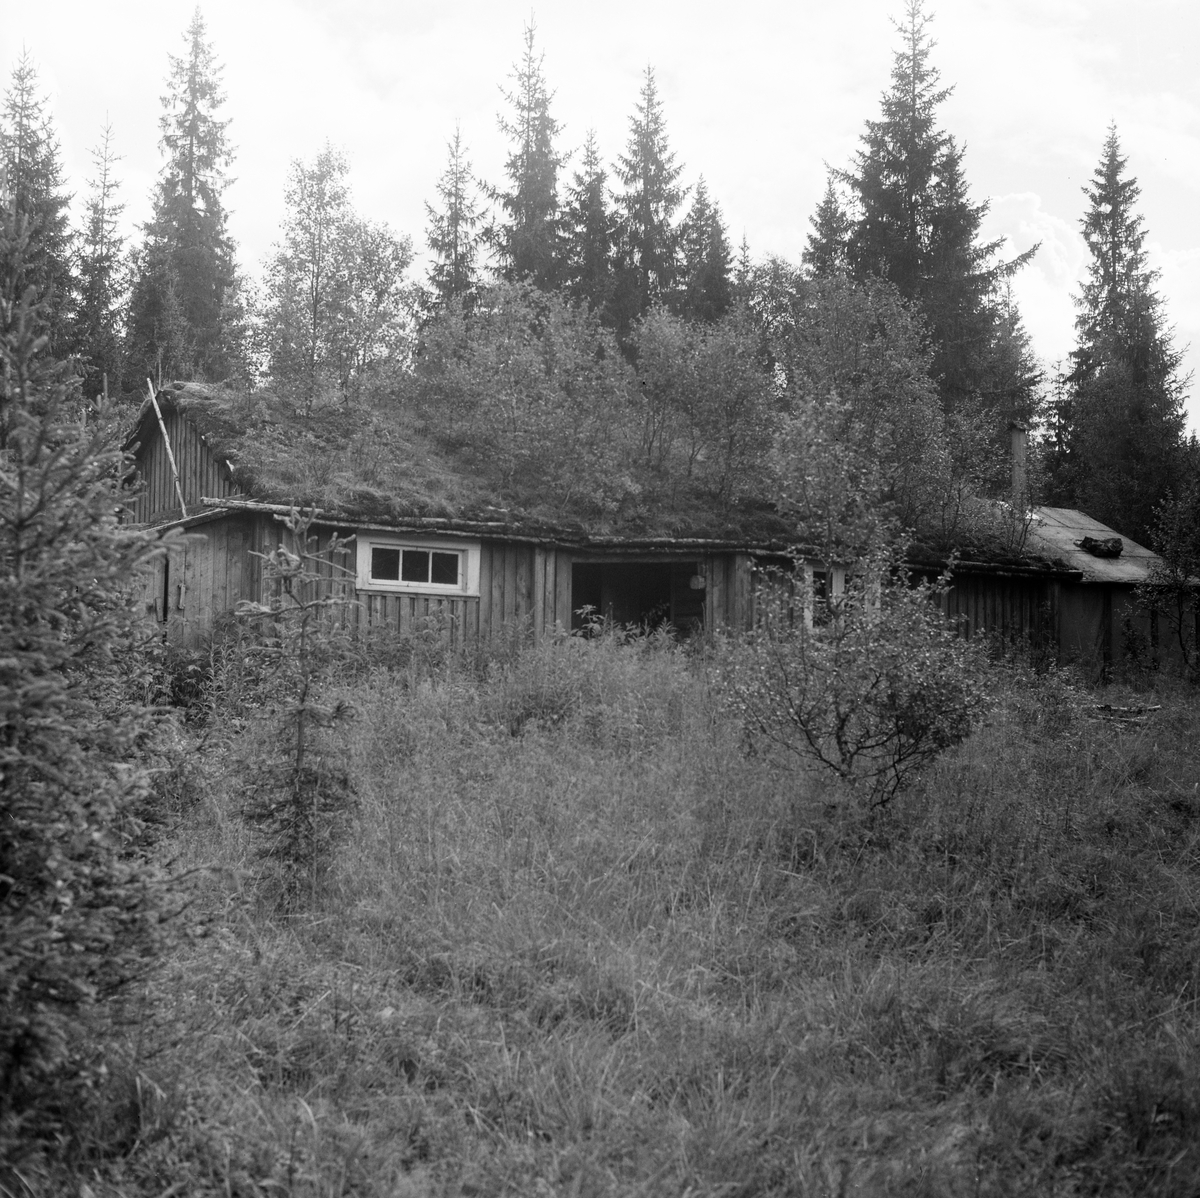 Ytterengkoia i daværende Kolveried kommune i Ytter-Namdalen, fotografert i 1964. Dette er en skogstuetype som skal ha vært vanlig i Trøndelag. Den har mannskapsrom i den ene enden og stall i den andre med et mellomliggende «peskhus», som var åpent på den sida av bygningskomplekset som her vender mot fotografen, men var stengt med en enkelt bordvegg på den andre sida. Peskhuset ble brukt som lager for høy til skogshestene og som lager for ved som ble brukt i komfyren som var varmekilde i mannskapsrommet. Både stallen og mannskapsrommet var laftekonstruksjoner, noe som ikke så lett lar seg lese ut fra dette fotografiet, for da det ble tatt var disse bygningsdelene utvendig bordkledd. Den opprinnelige løsningen med mannskapsrom, peskhus og stall på rekke var supplert med tilbygg i begge gavlendene. Inntil stallen var det reist et bindingsverksskur med bølgeblikktekket pulttak, og mannskapsrommet hadde også en forlengelse, et tørkerom, utført i bindingsverk med pappkledning og platetak som hadde røykavløp via et blikkrør. På det ellers torvtekte saltaket vokste det bjørkekratt som tydet på at det var lenge siden denne skogstua hadde vært brukt og vedlikeholdt. 

Norsk Skogbruksmuseum ønsket i 1960-åra å supplere den østlandsdominerte samlinga av skogshusvære i friluftssamlinga på Prestøya med koietyper fra andre norske skogdistrikter. I 1965 fikk de dette bygningskomplekset som gave fra daværende grunneier, Bangdalsbruket. Karsten Solum (1923-1970) og Bjarne Myhre (1922-1977) bisto med demontering, og sistnevnte hadde også hovedansvar for gjenoppføringa på museet.  Her gjenoppsto Ytterengstua eller Bangdalskoia uten den sekundære ytterkledningen og uten tilbyggene i gavlendene - jfr. Norsk skogmuseums bygningssamling - SJF-B.0029 - der det finnes mer informasjon.